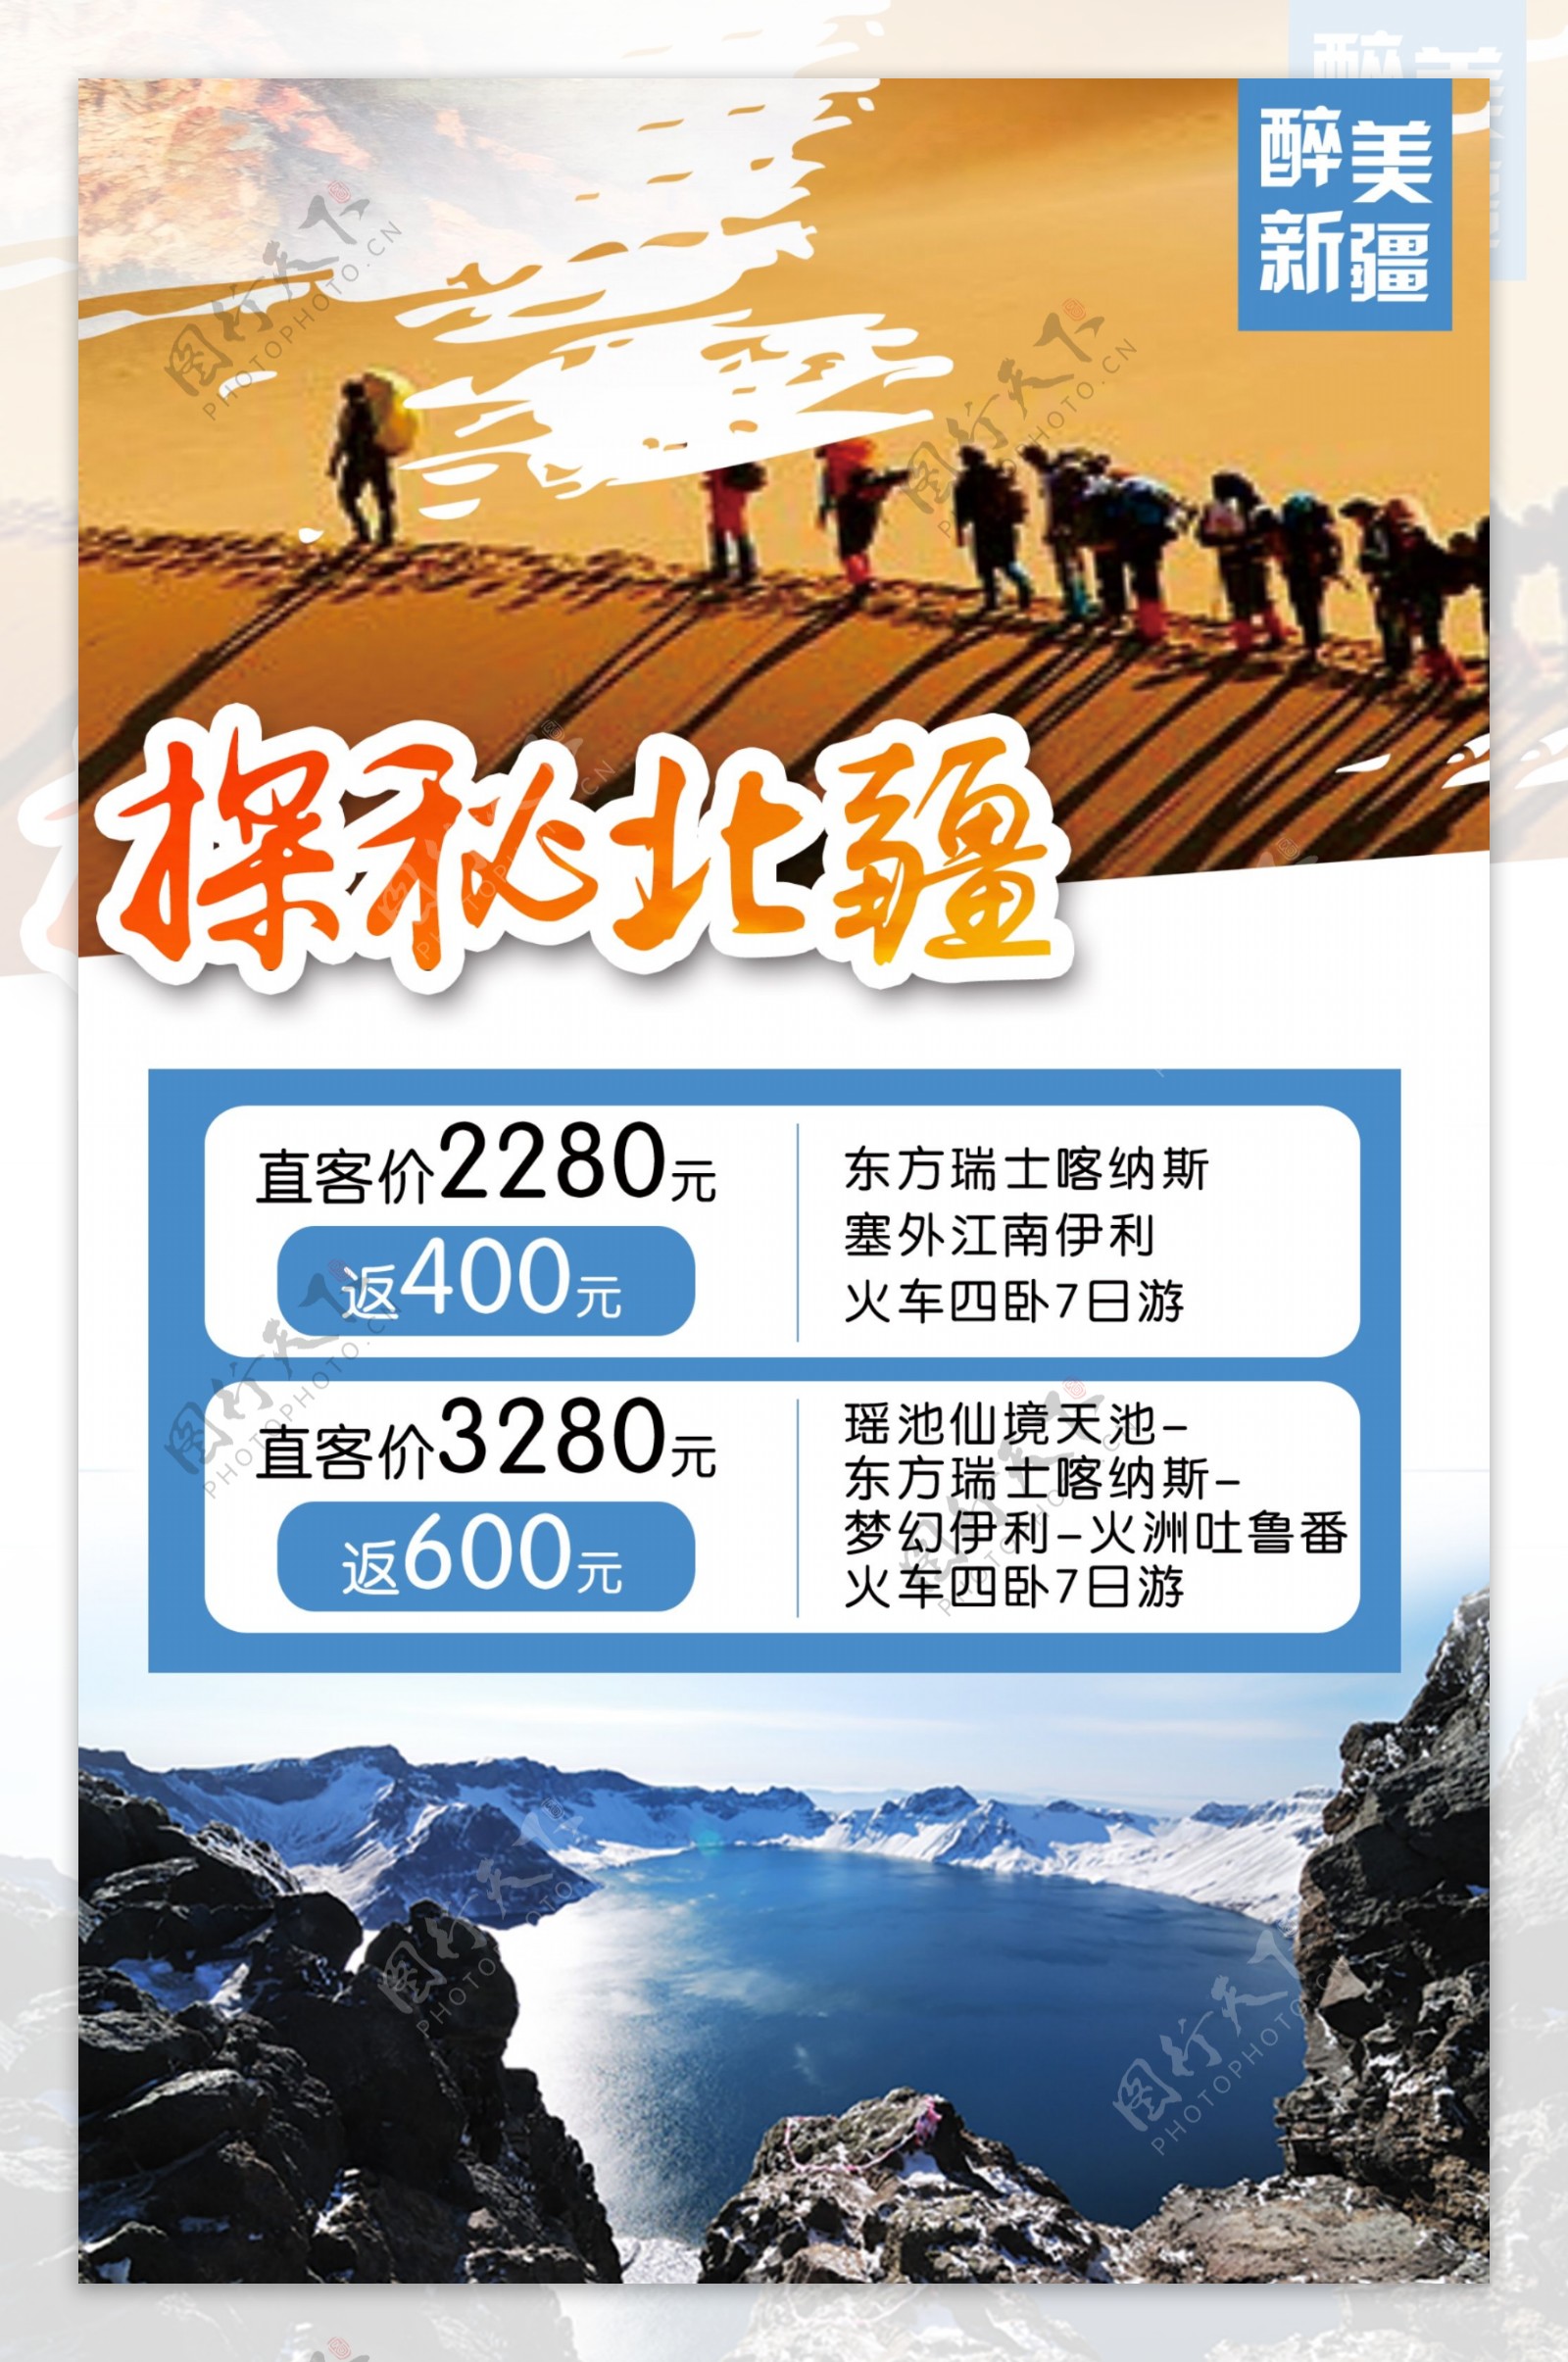 新疆旅游宣传海报